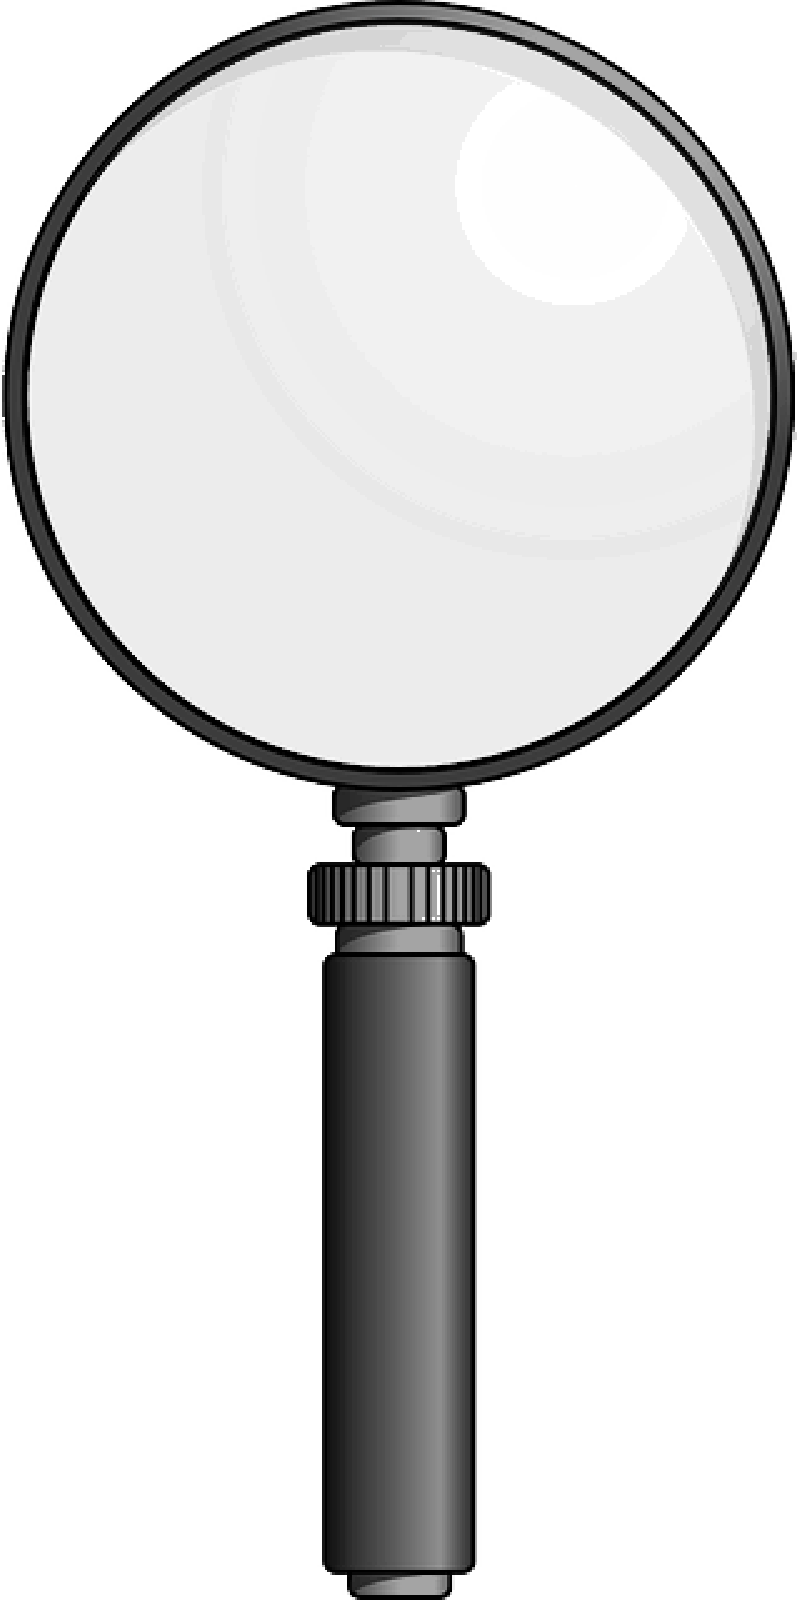 Focus clipart magnifier. Loupe png transparent images